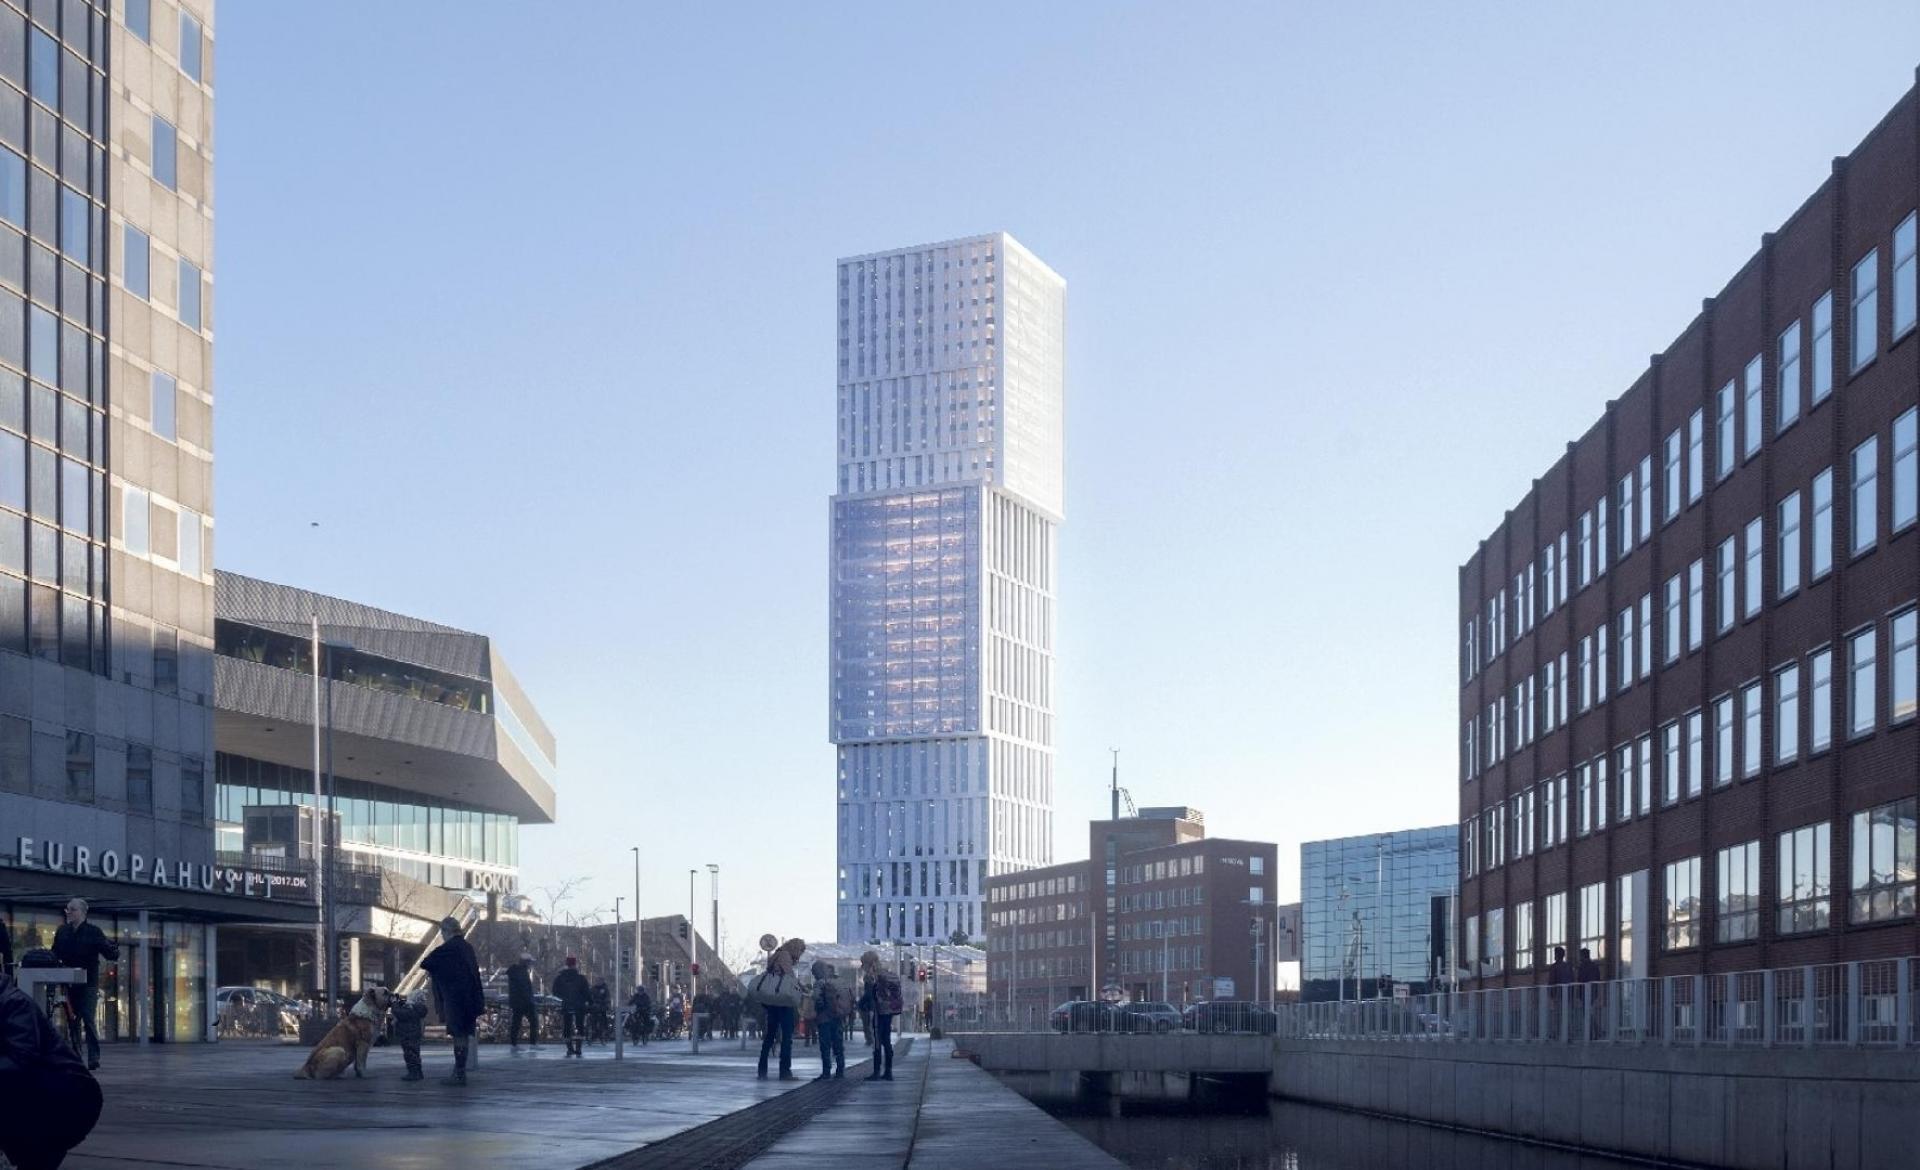 Erhvervsdomicilet Mindet på Aarhus Havn, der kommer til at bestå af både nybygget højhus og ditto p-hus, forventes at stå færdigt i marts 2027. Visualisering: C.F. Møller Architects